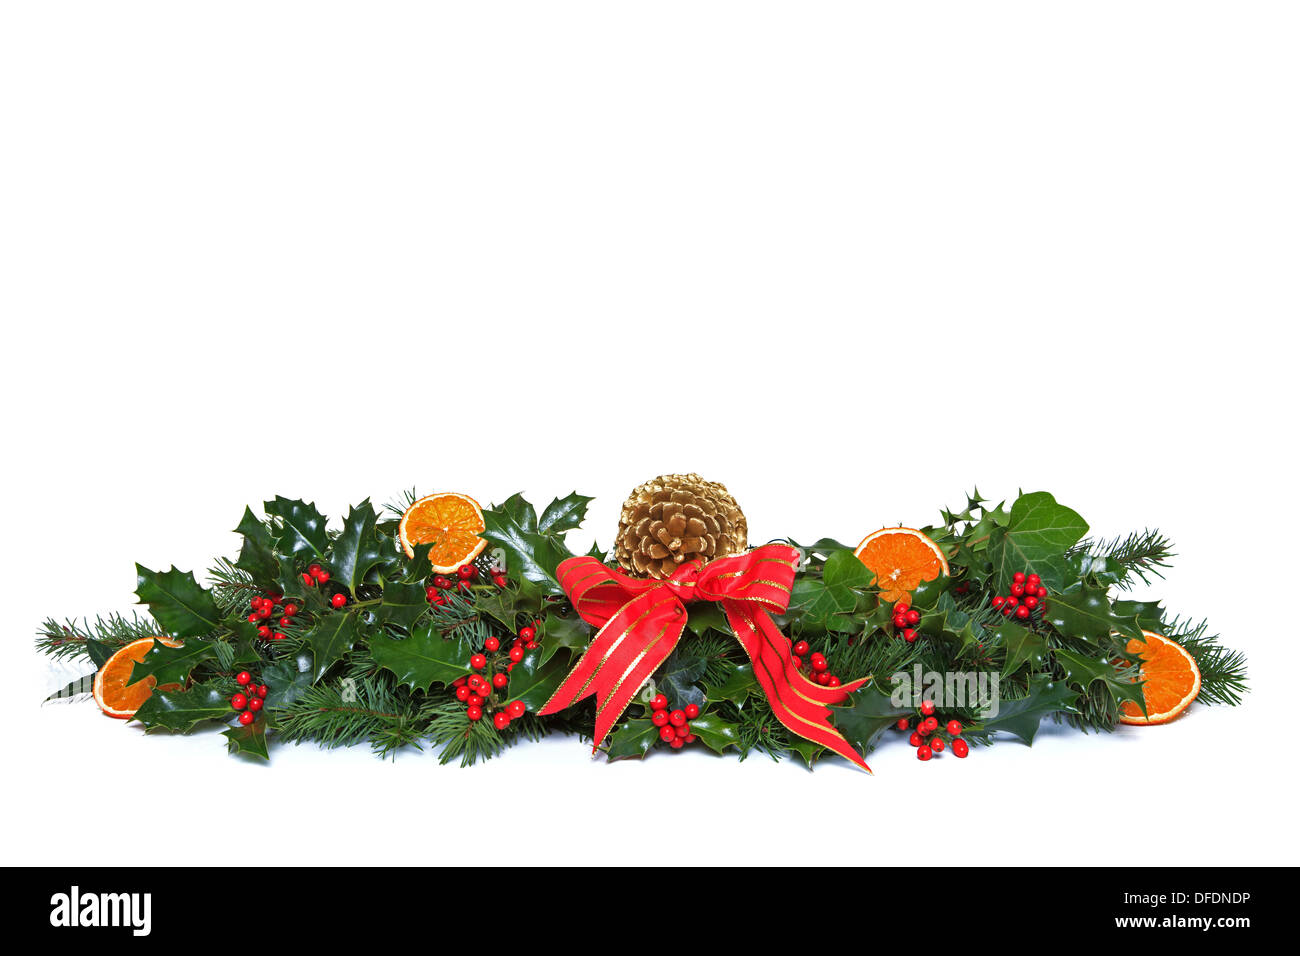 Eine traditionelle Weihnachtsgirlande, hergestellt aus frischen Holly mit roten Beeren, getrocknete orange Segmente, grünen Efeu, frische Nadelbaum Zweige Stockfoto